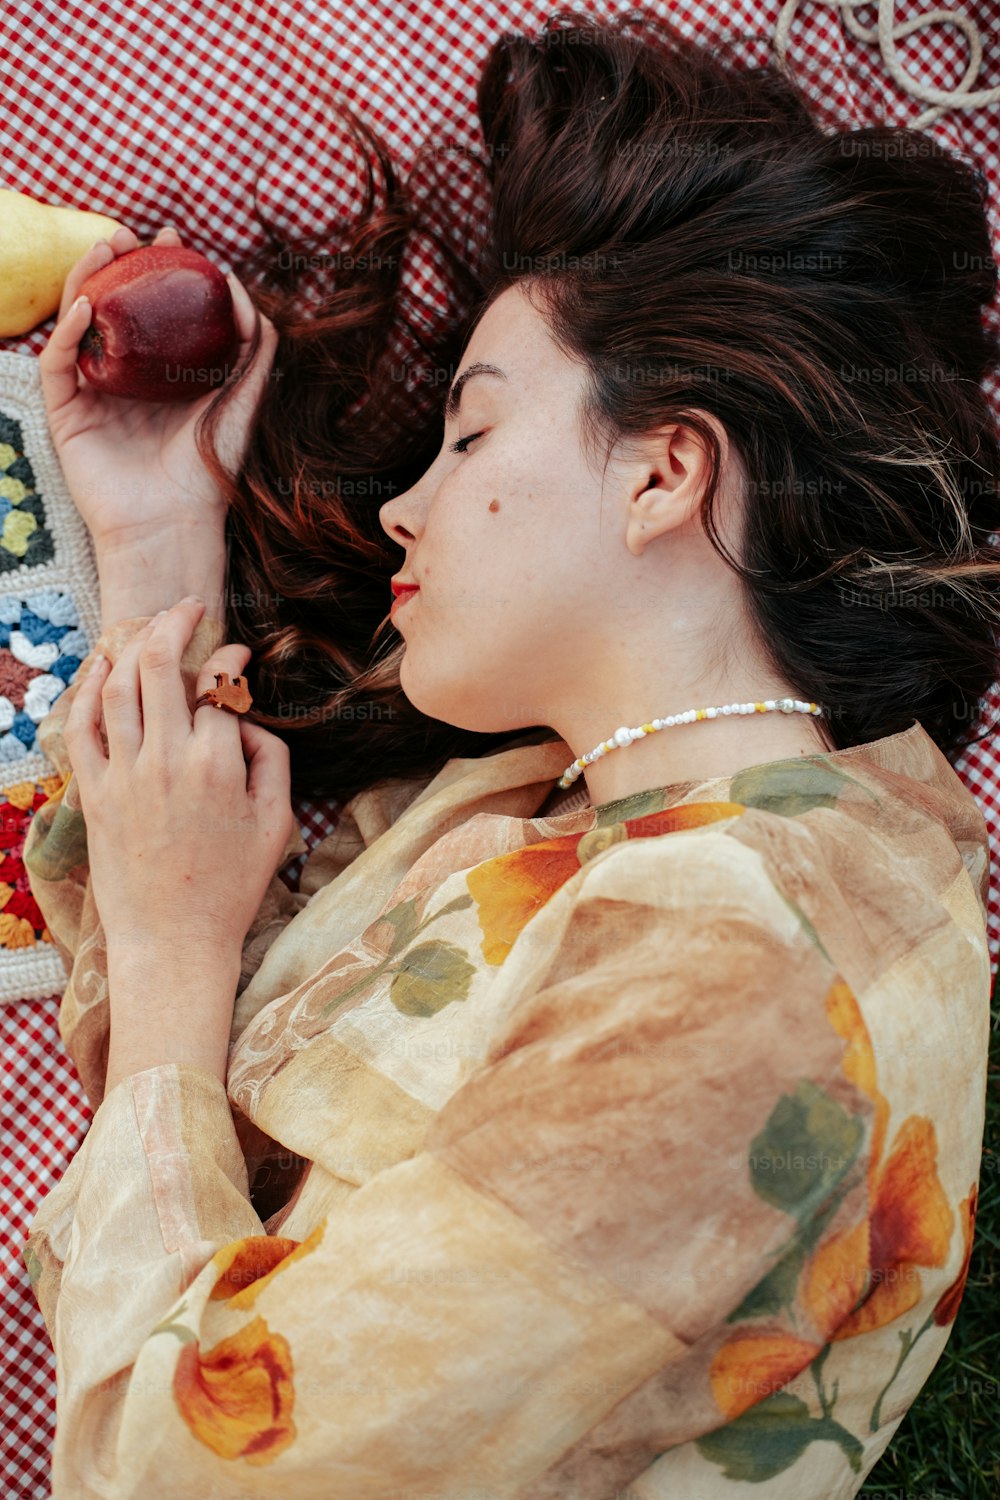 Une femme allongée sur une couverture tenant une banane et une pomme